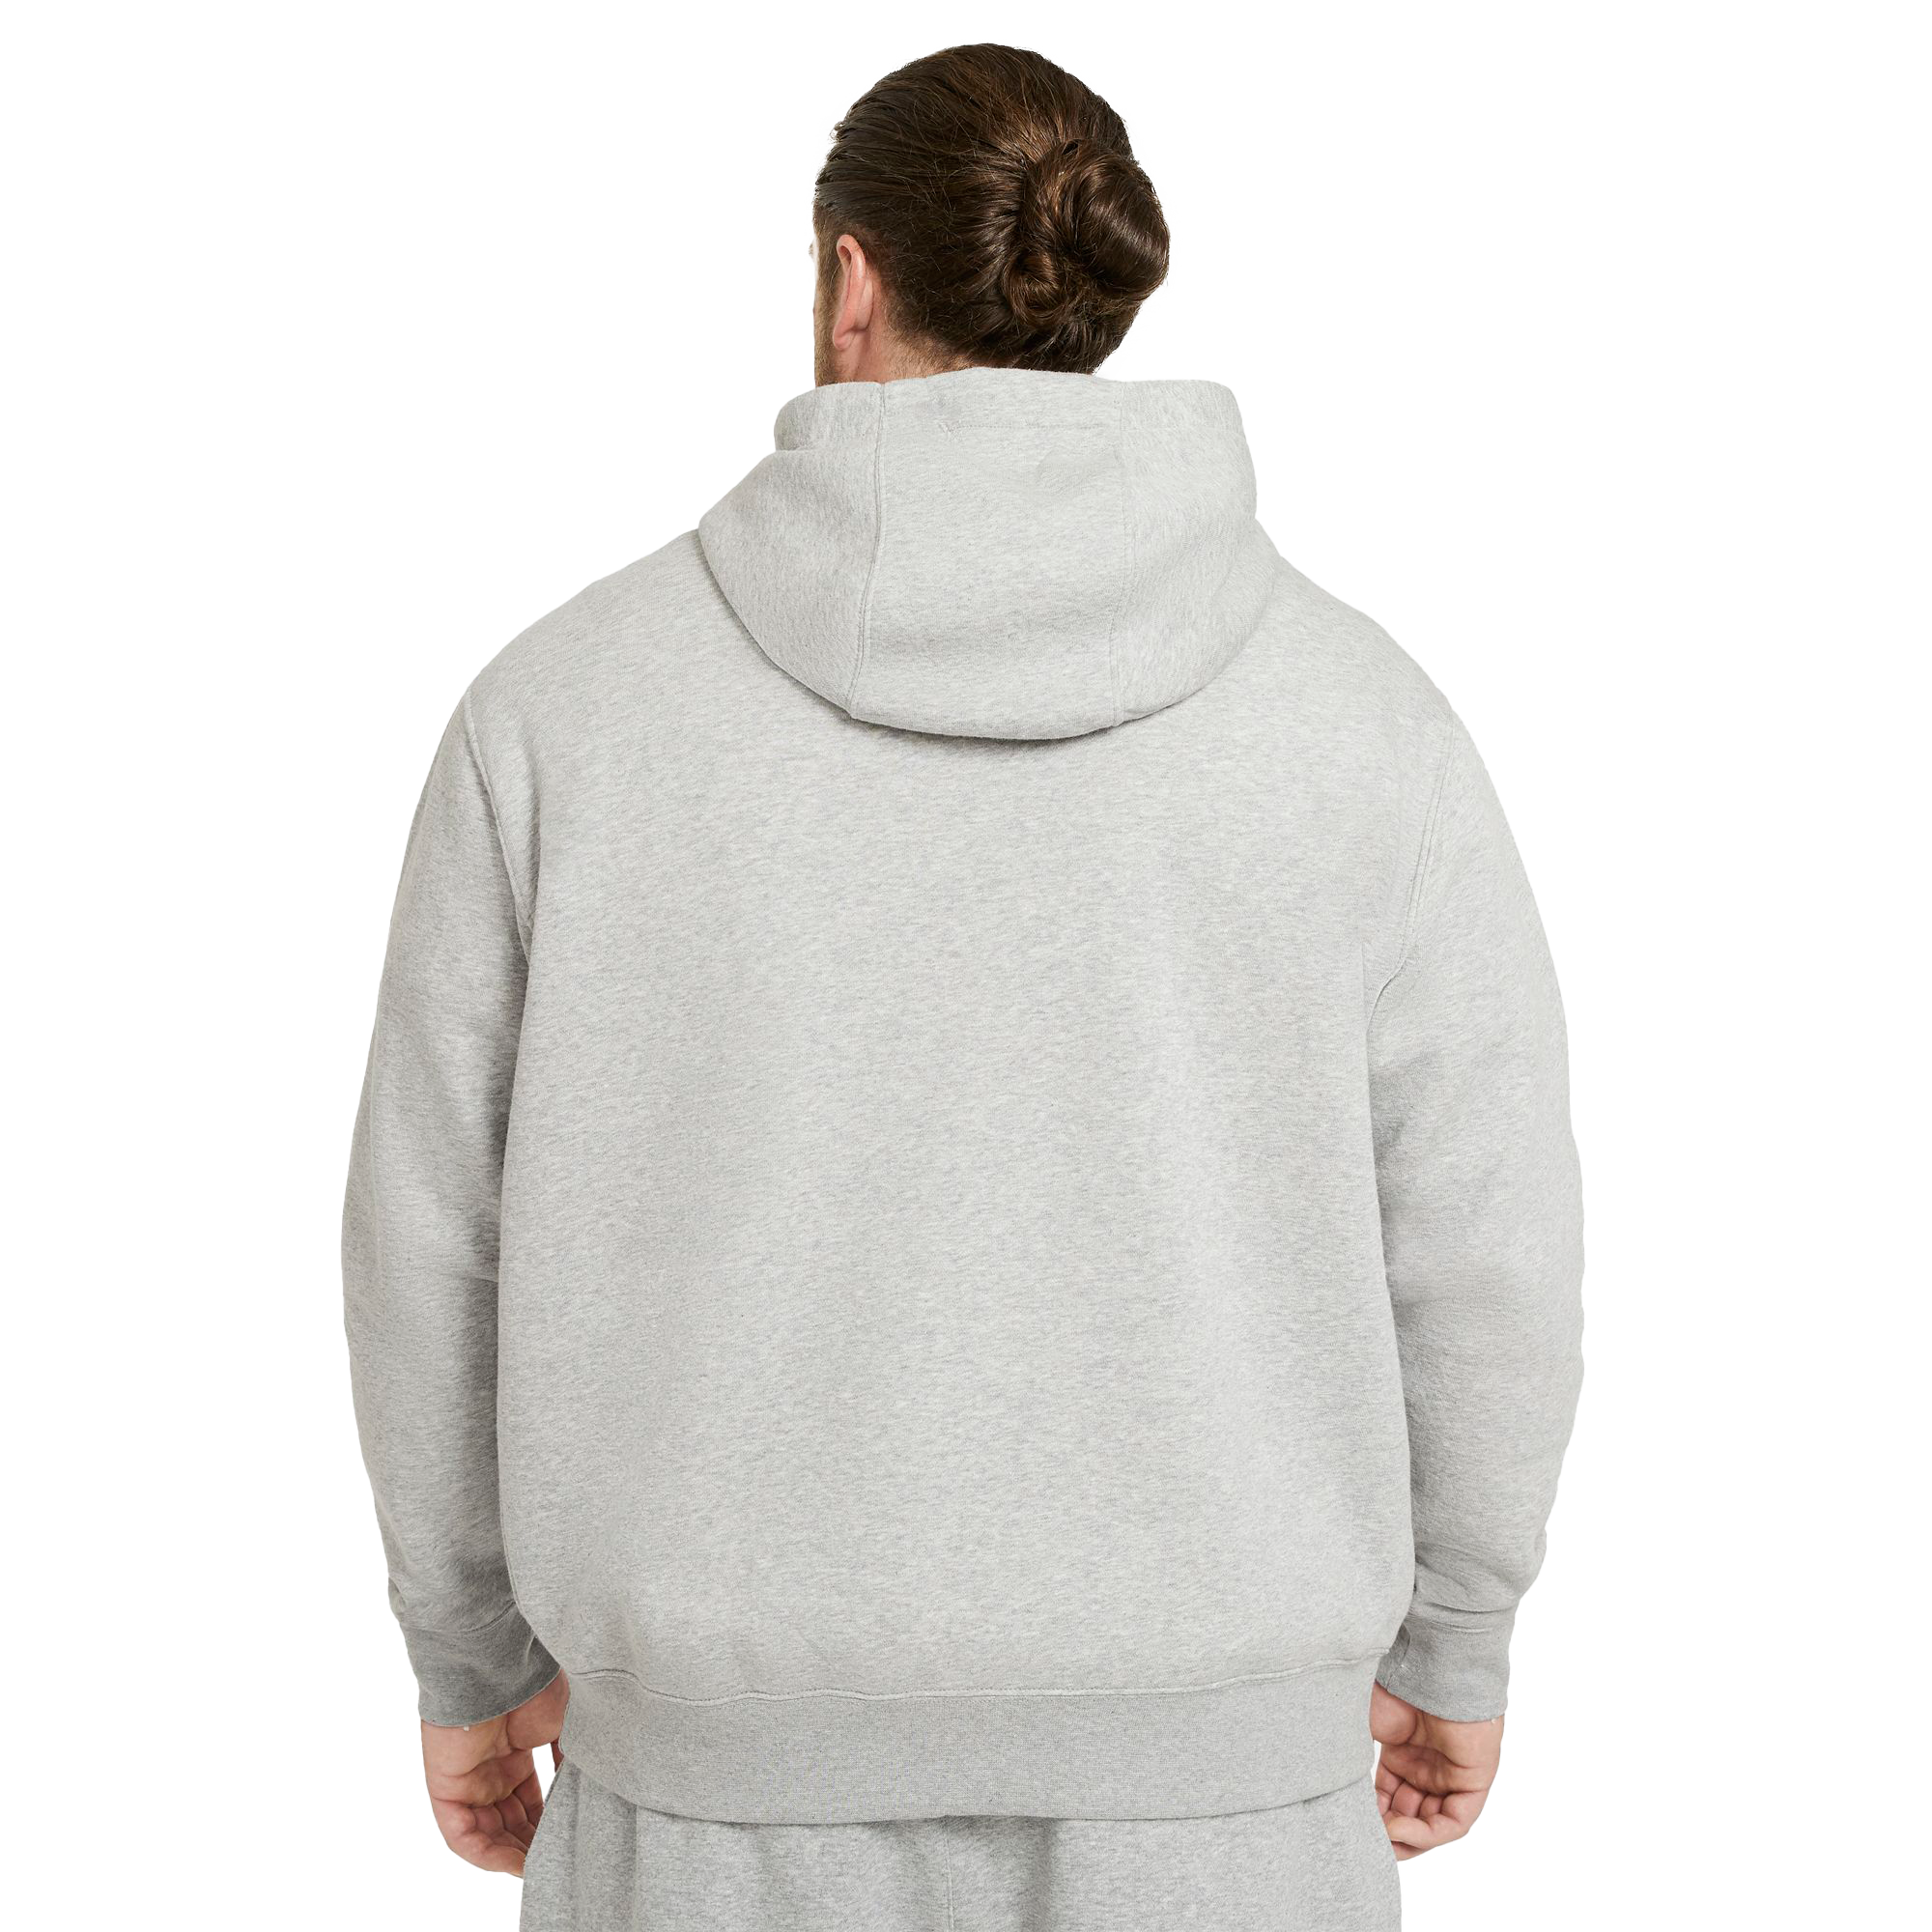 KLJR Men Active Hoodie Big & Tall Pocket Pullover Fleece Sweatshirt 